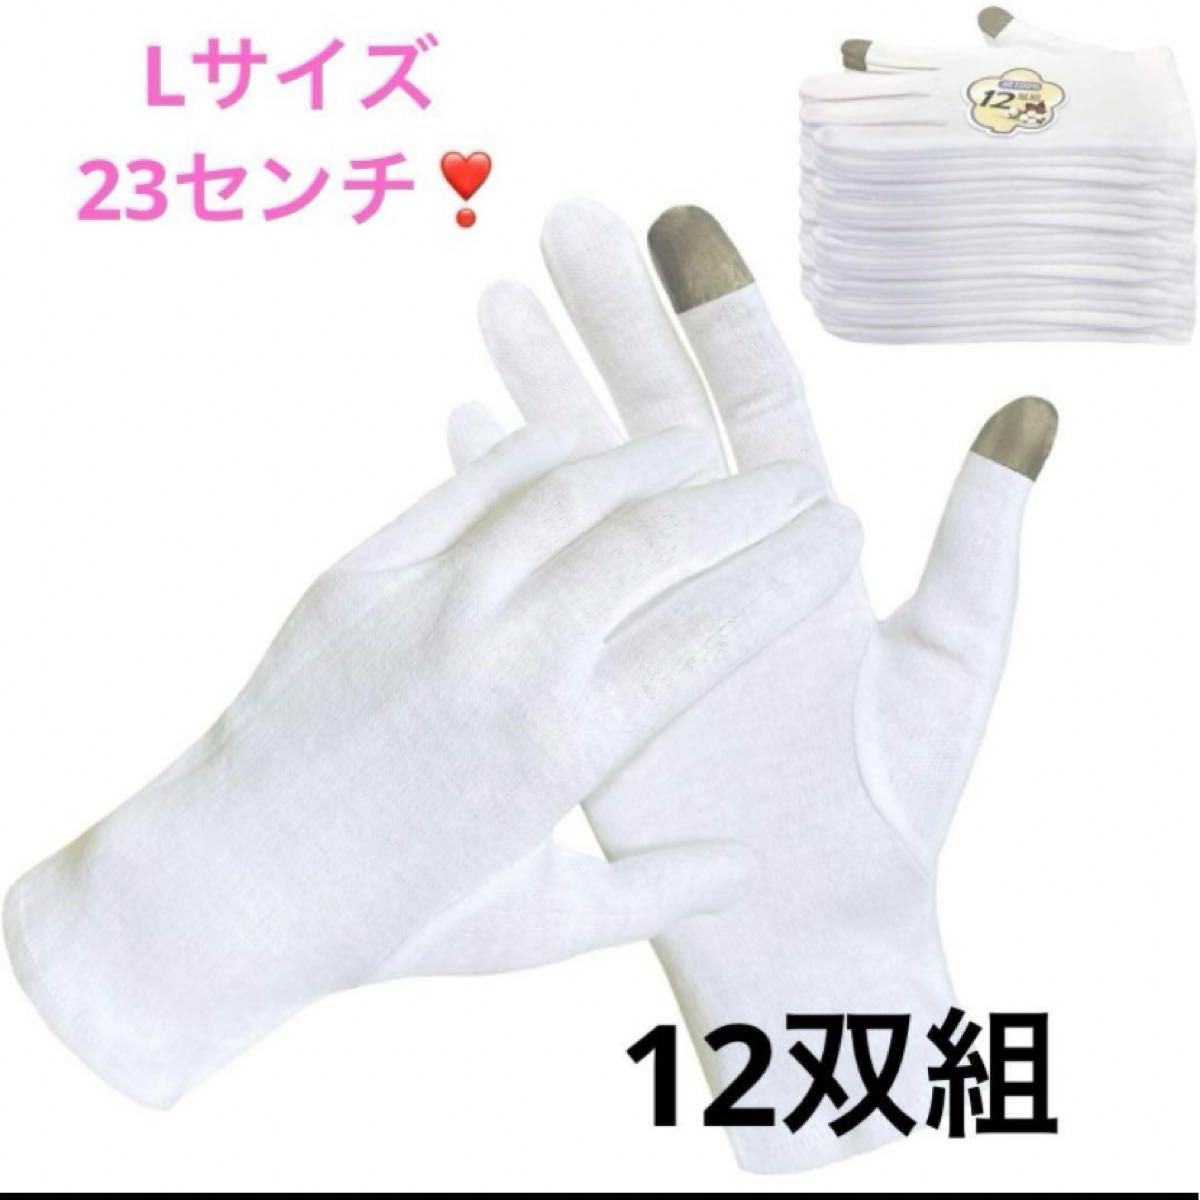 【1点限り】 12双組 おやすみ手袋 スマホ対応 保湿 手荒れ防止 アトピー対策 ハンドケア お肌に優しい純綿100％ 綿手袋 白